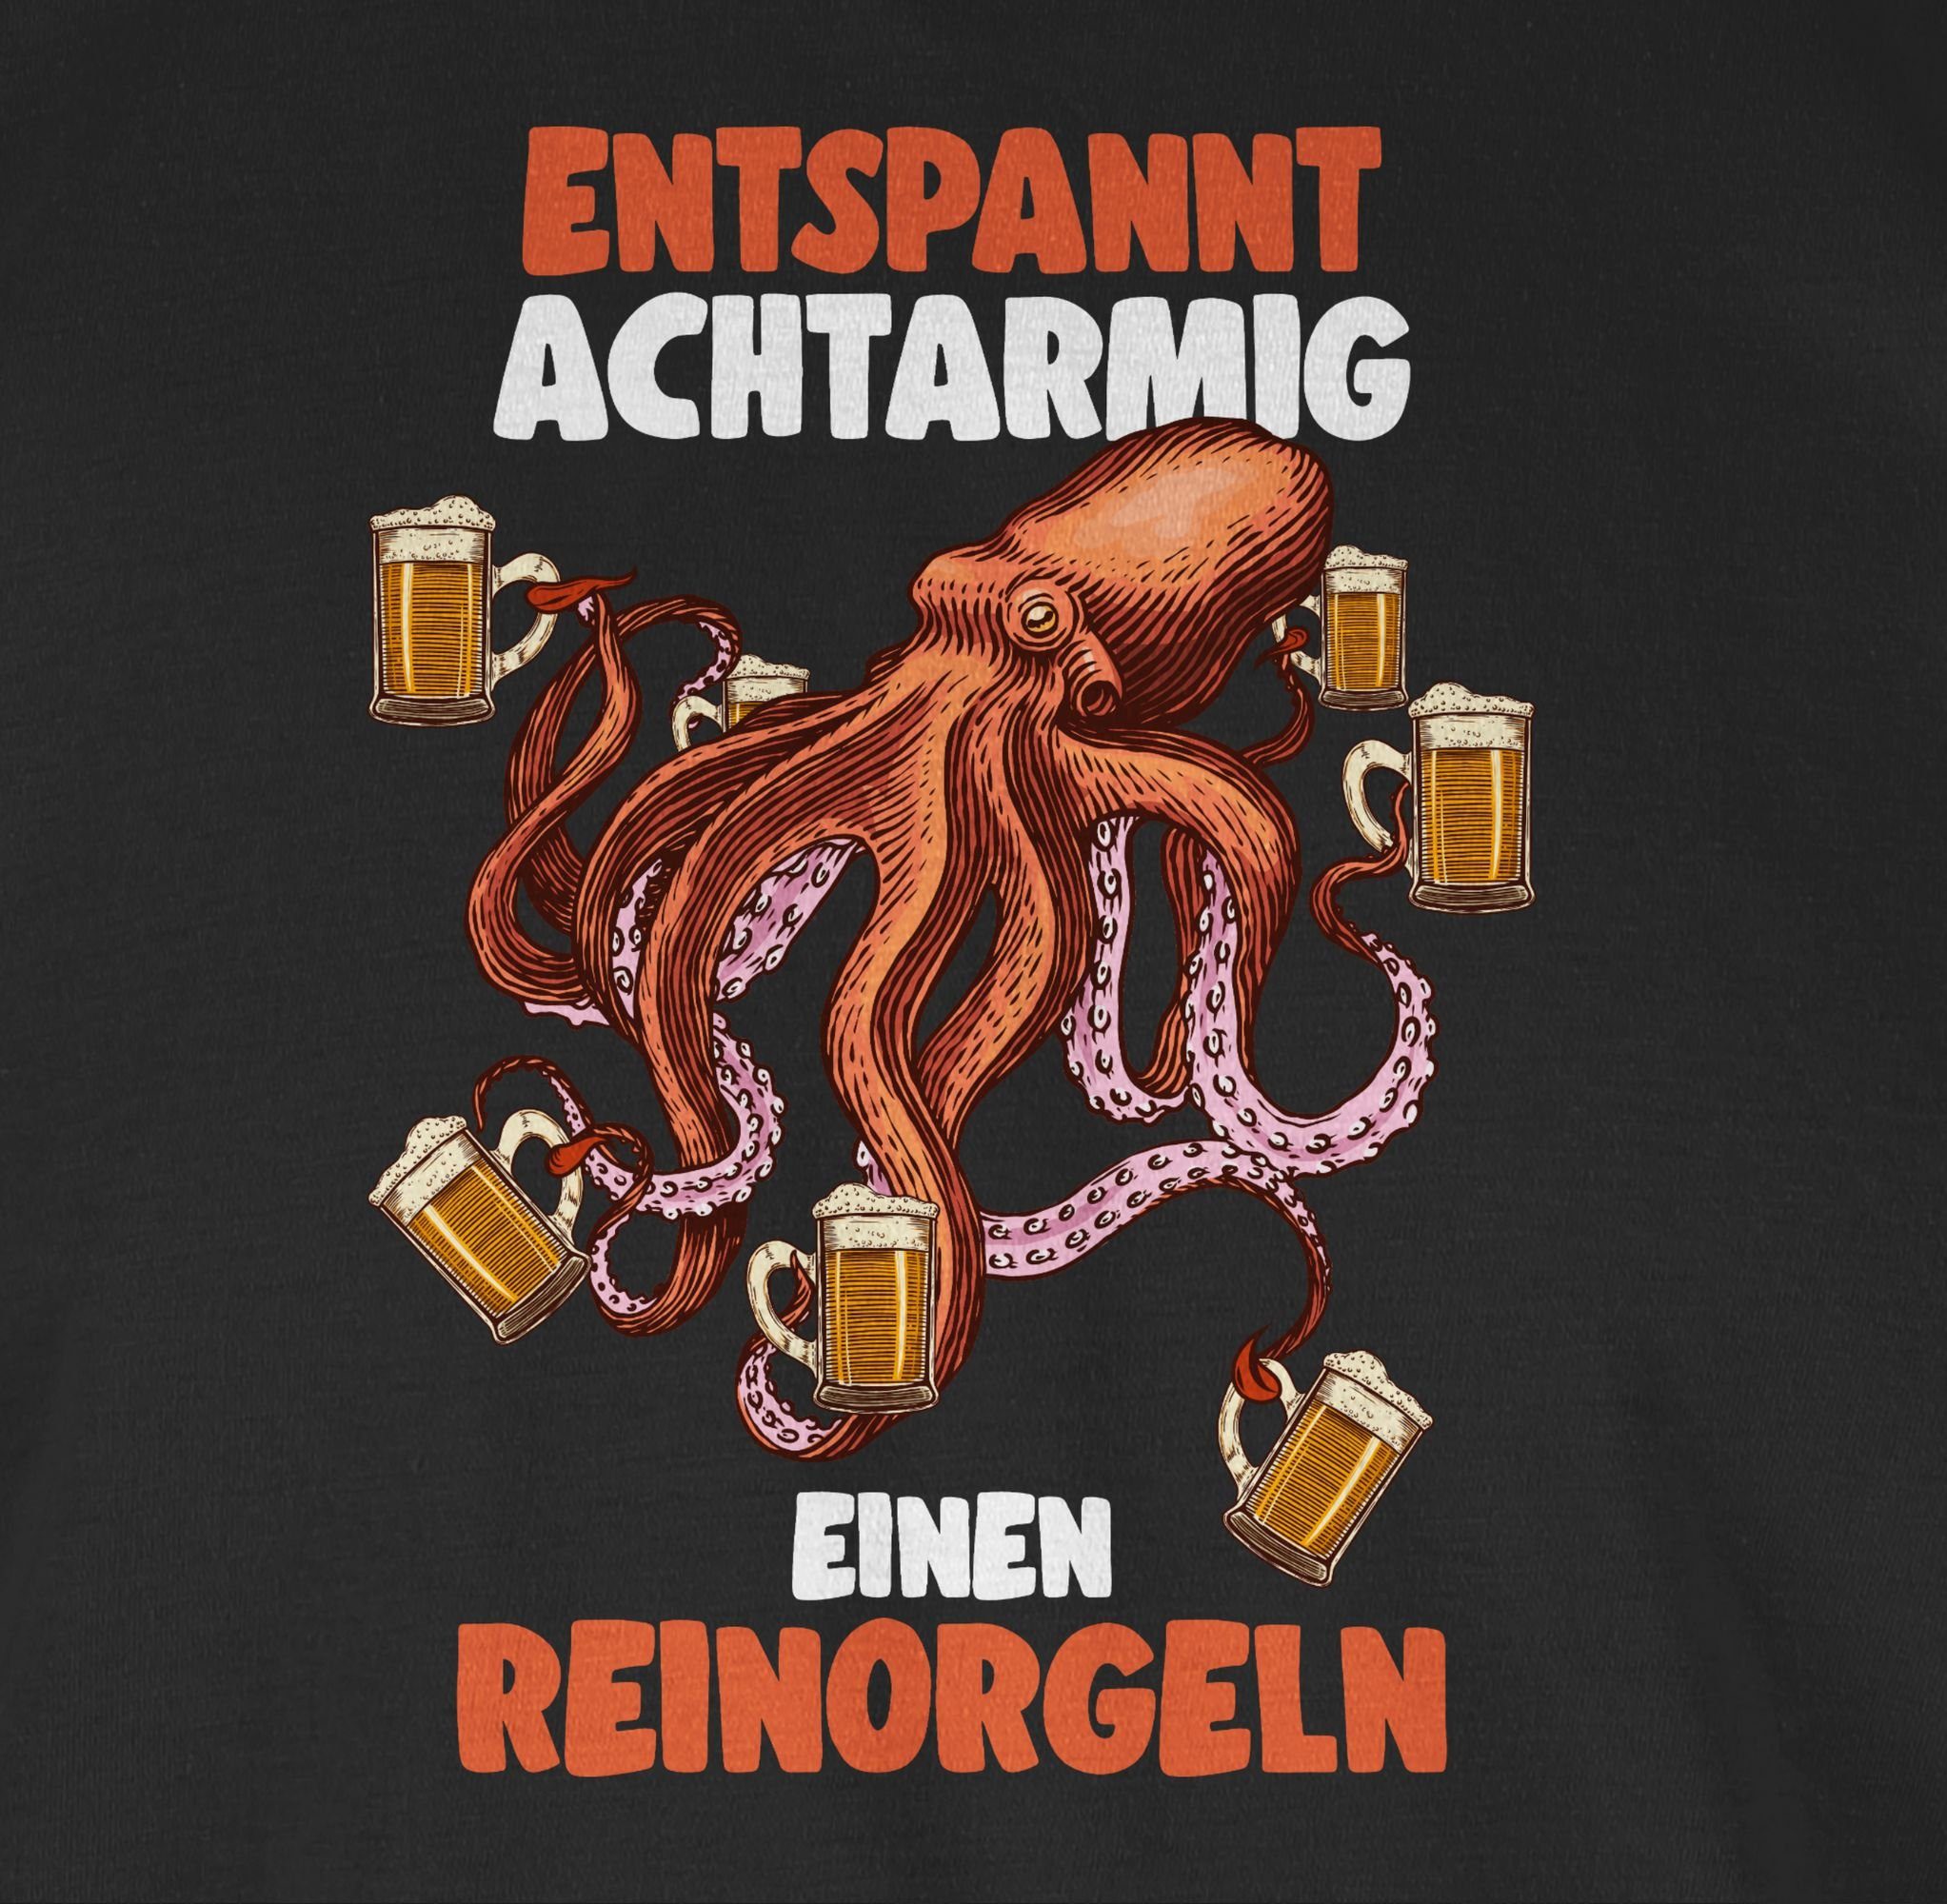 Shirtracer T-Shirt Entspannt achtarmig S Alkohol einen - Herren reinorgeln & - Schwarz Bier Party 01 8 - armig reinorgelson